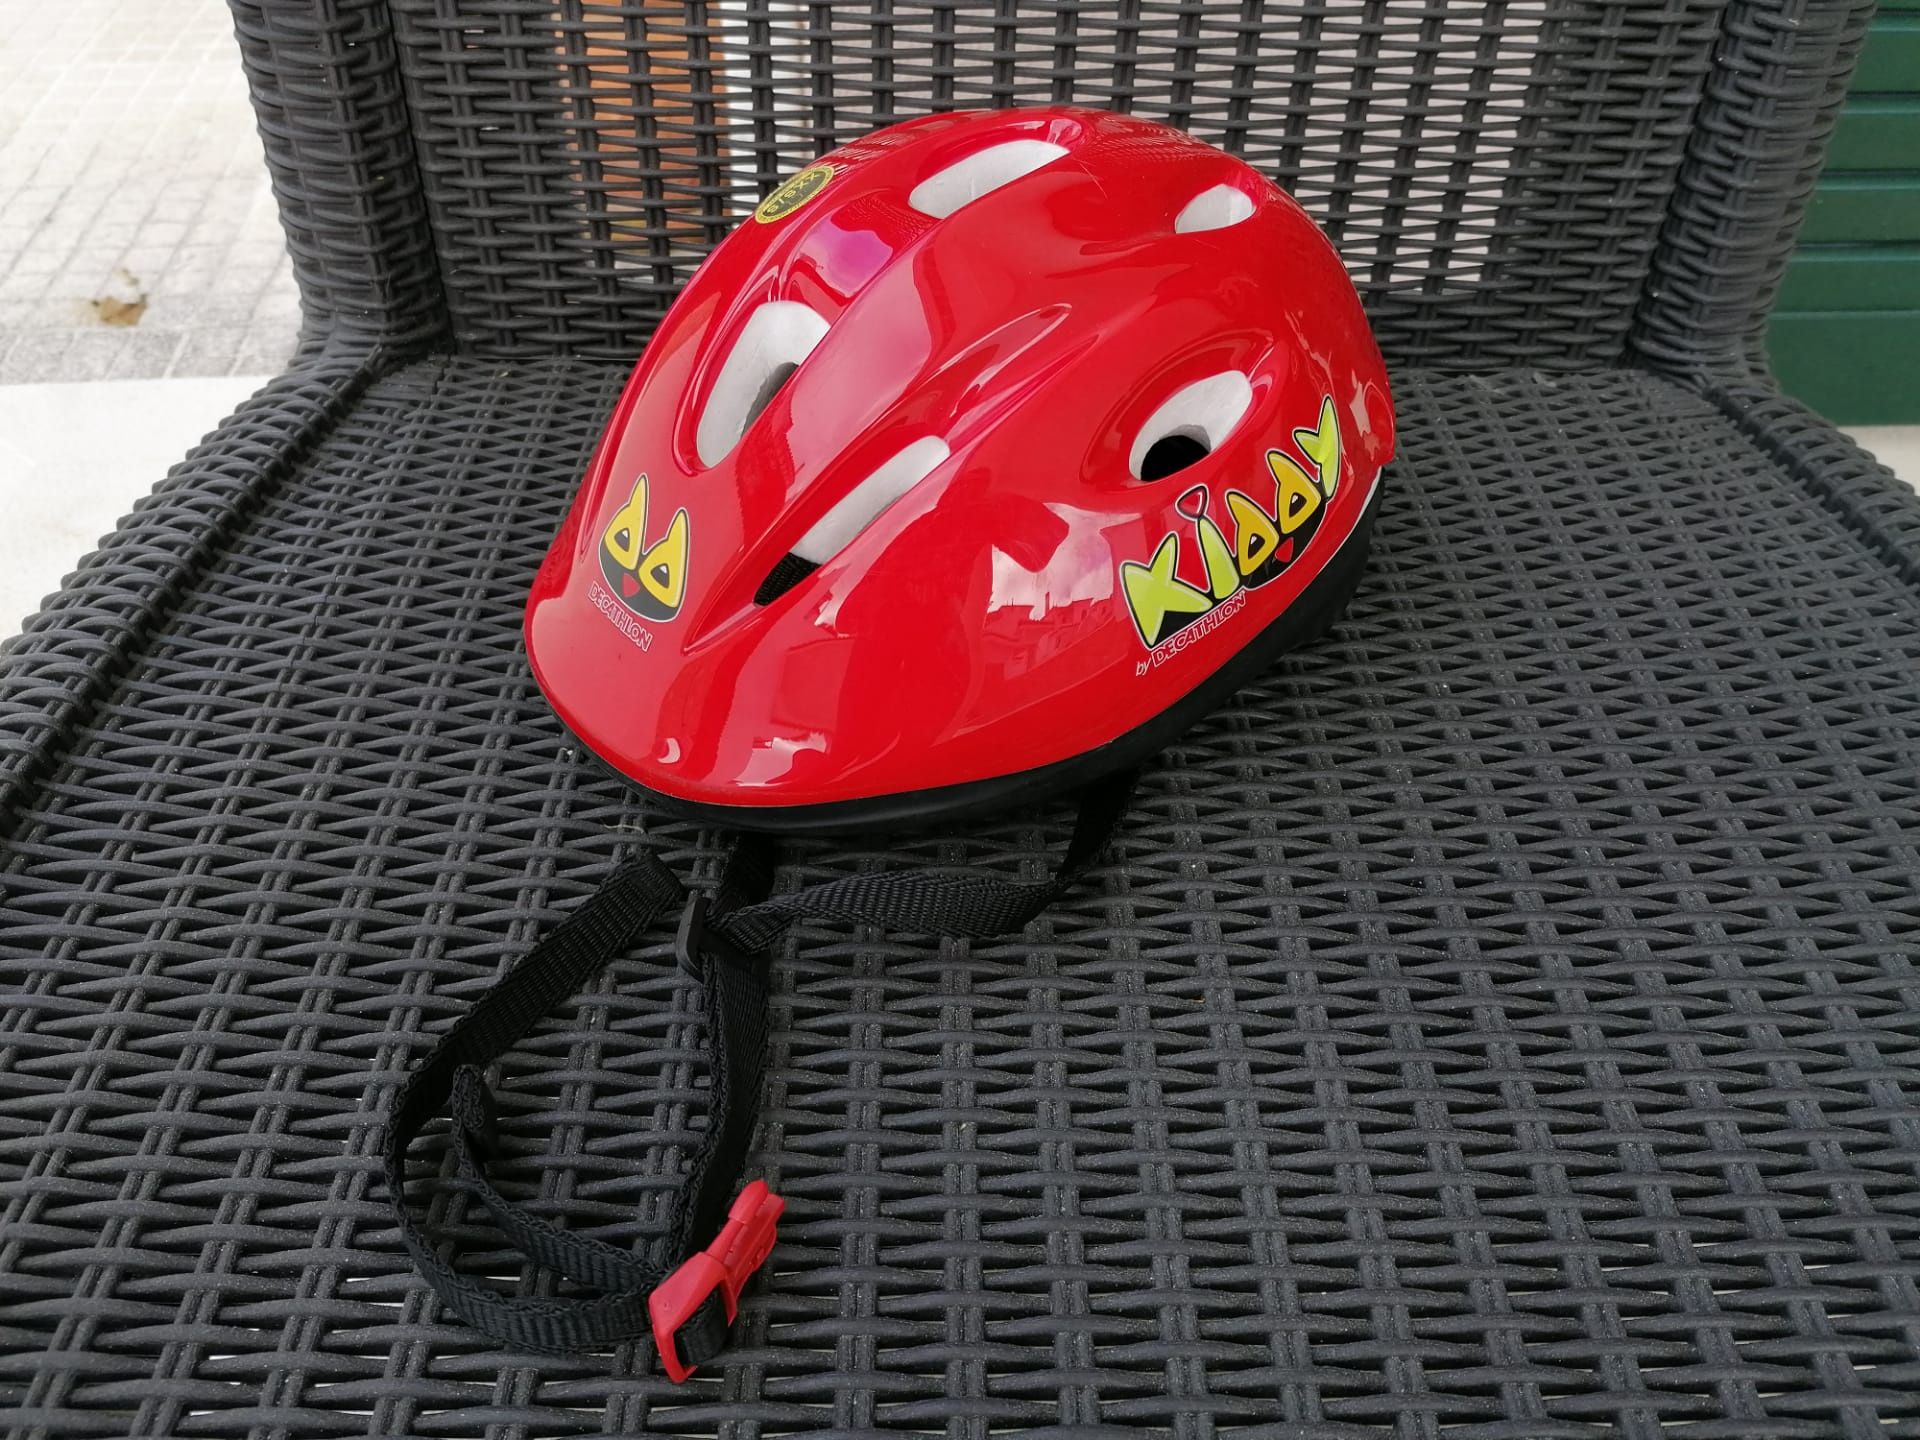 Patins em linha tamanho 30-31 com capacete e proteções incluidas